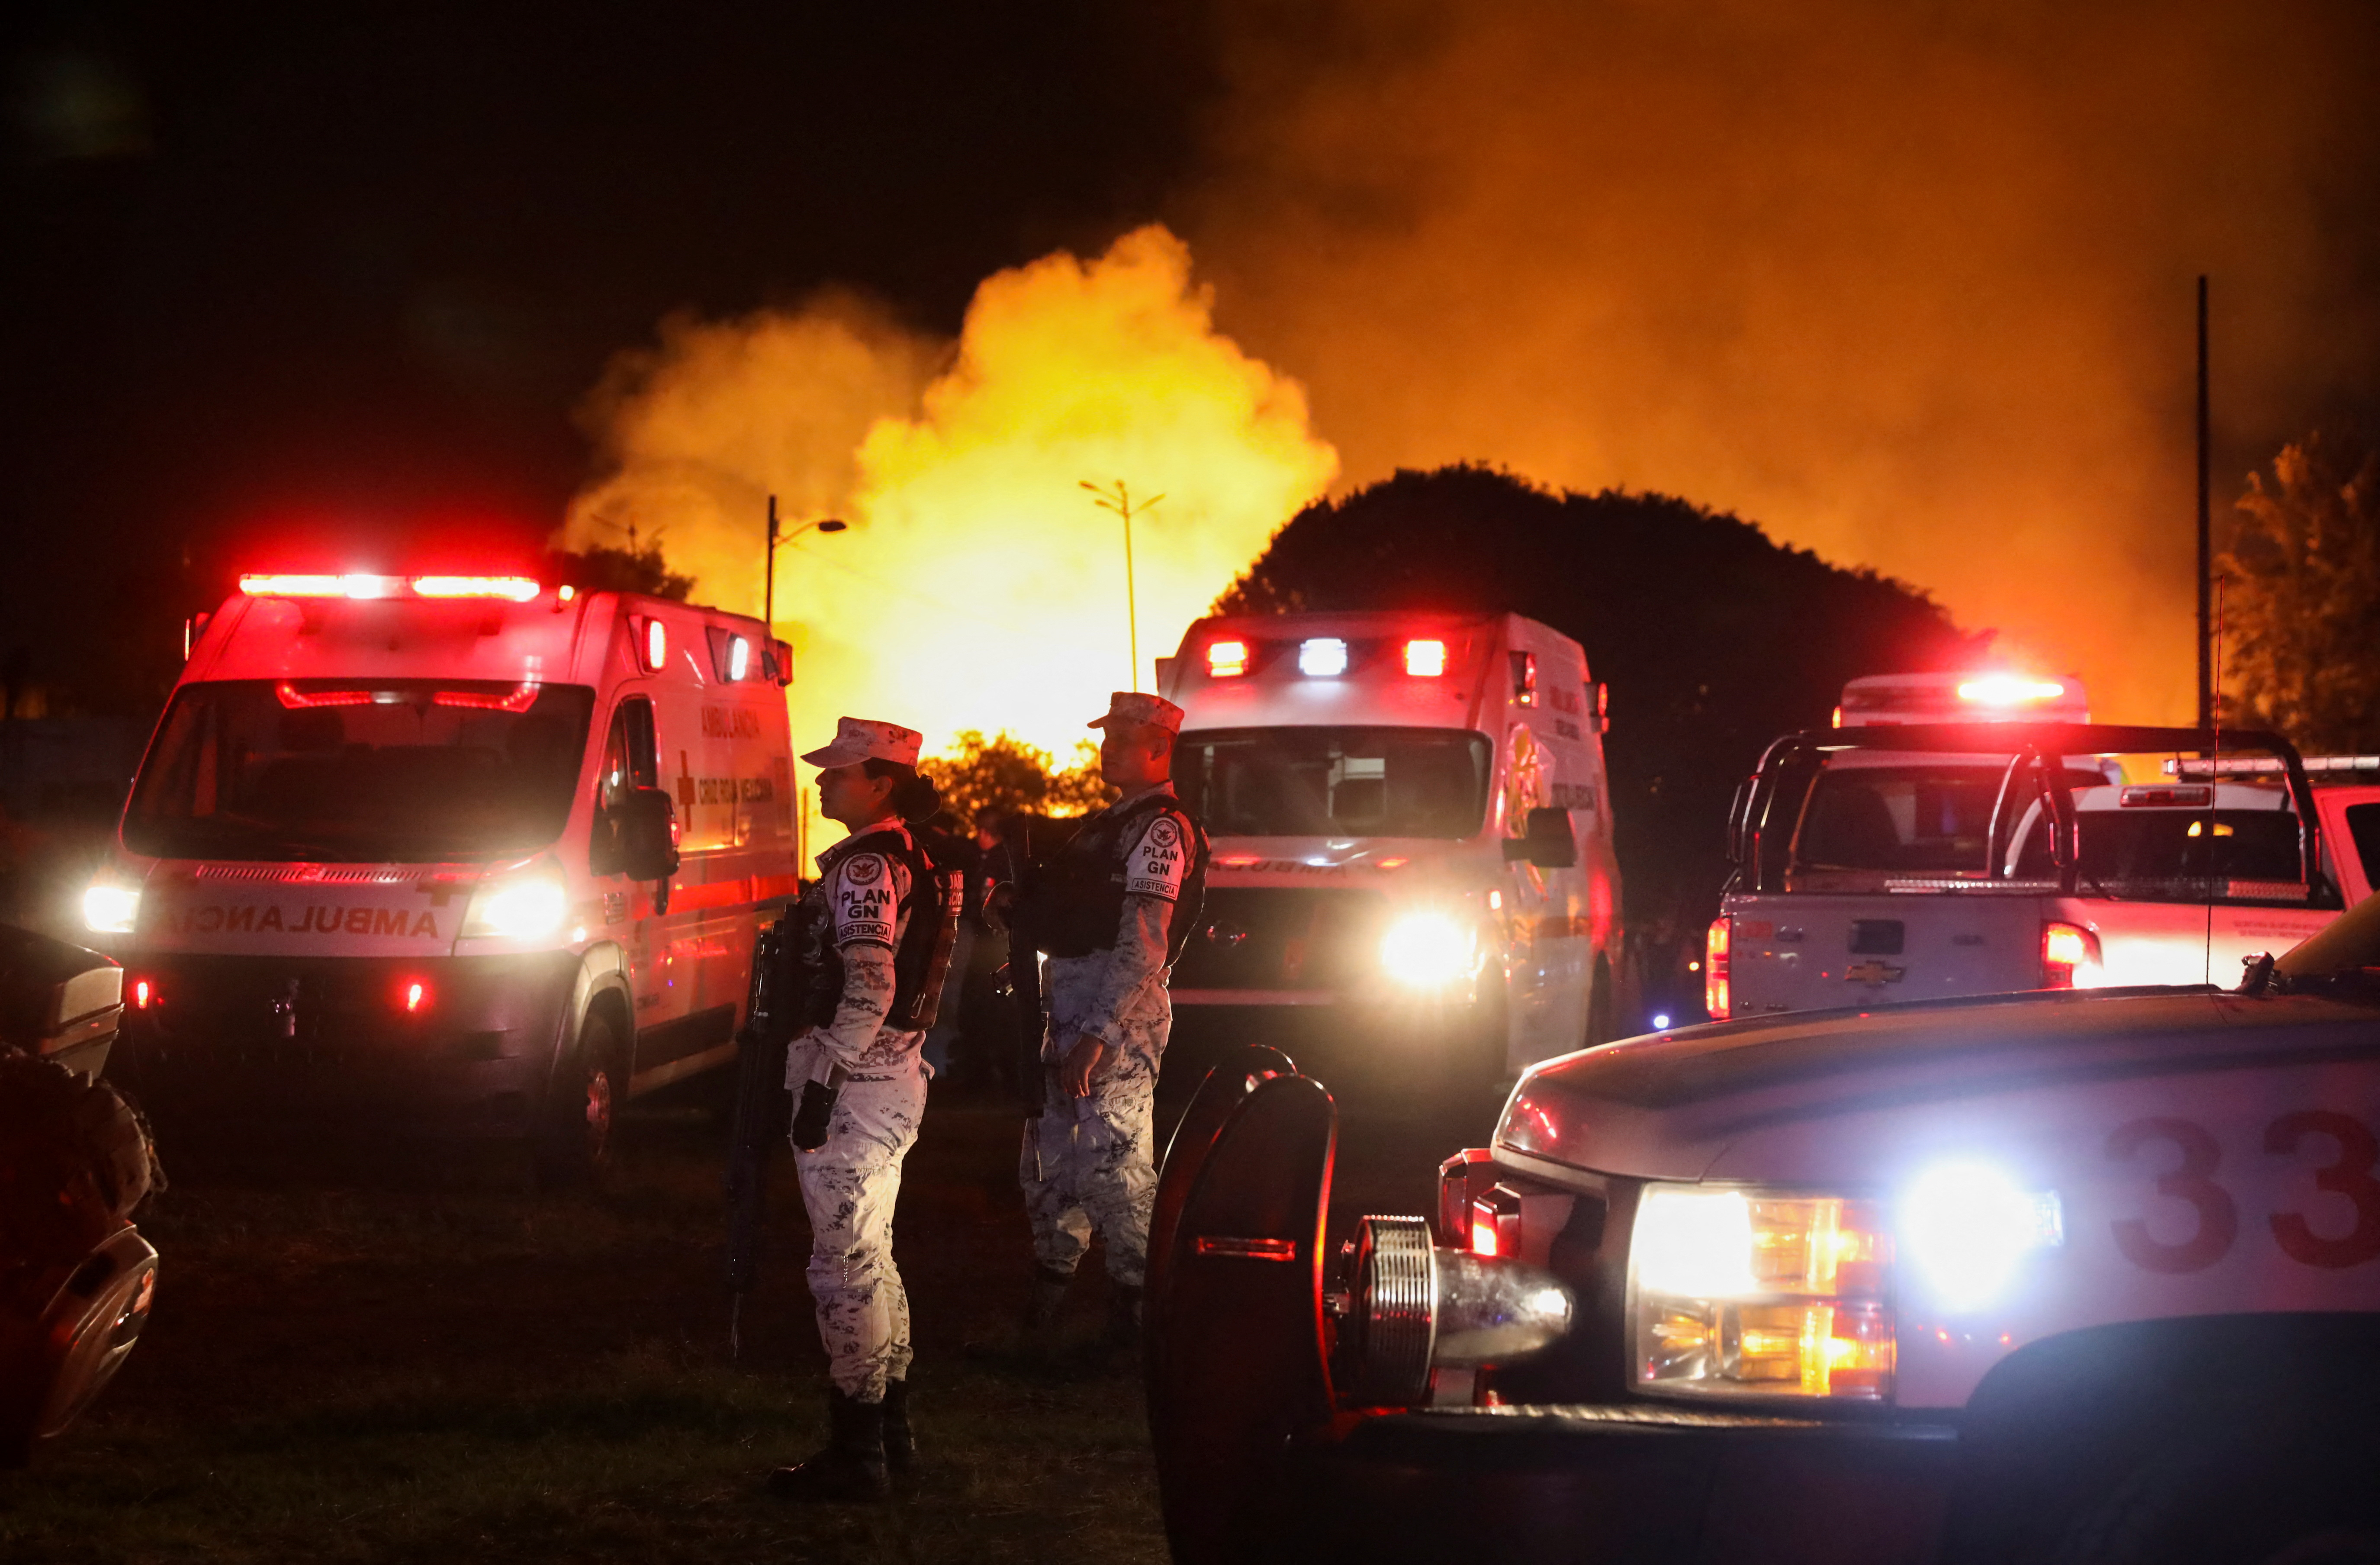 Equipos de emergencia permanecieron en la zona durante la noche del jueves y parte de la madrugada del viernes. REUTERS/Luis Cortes